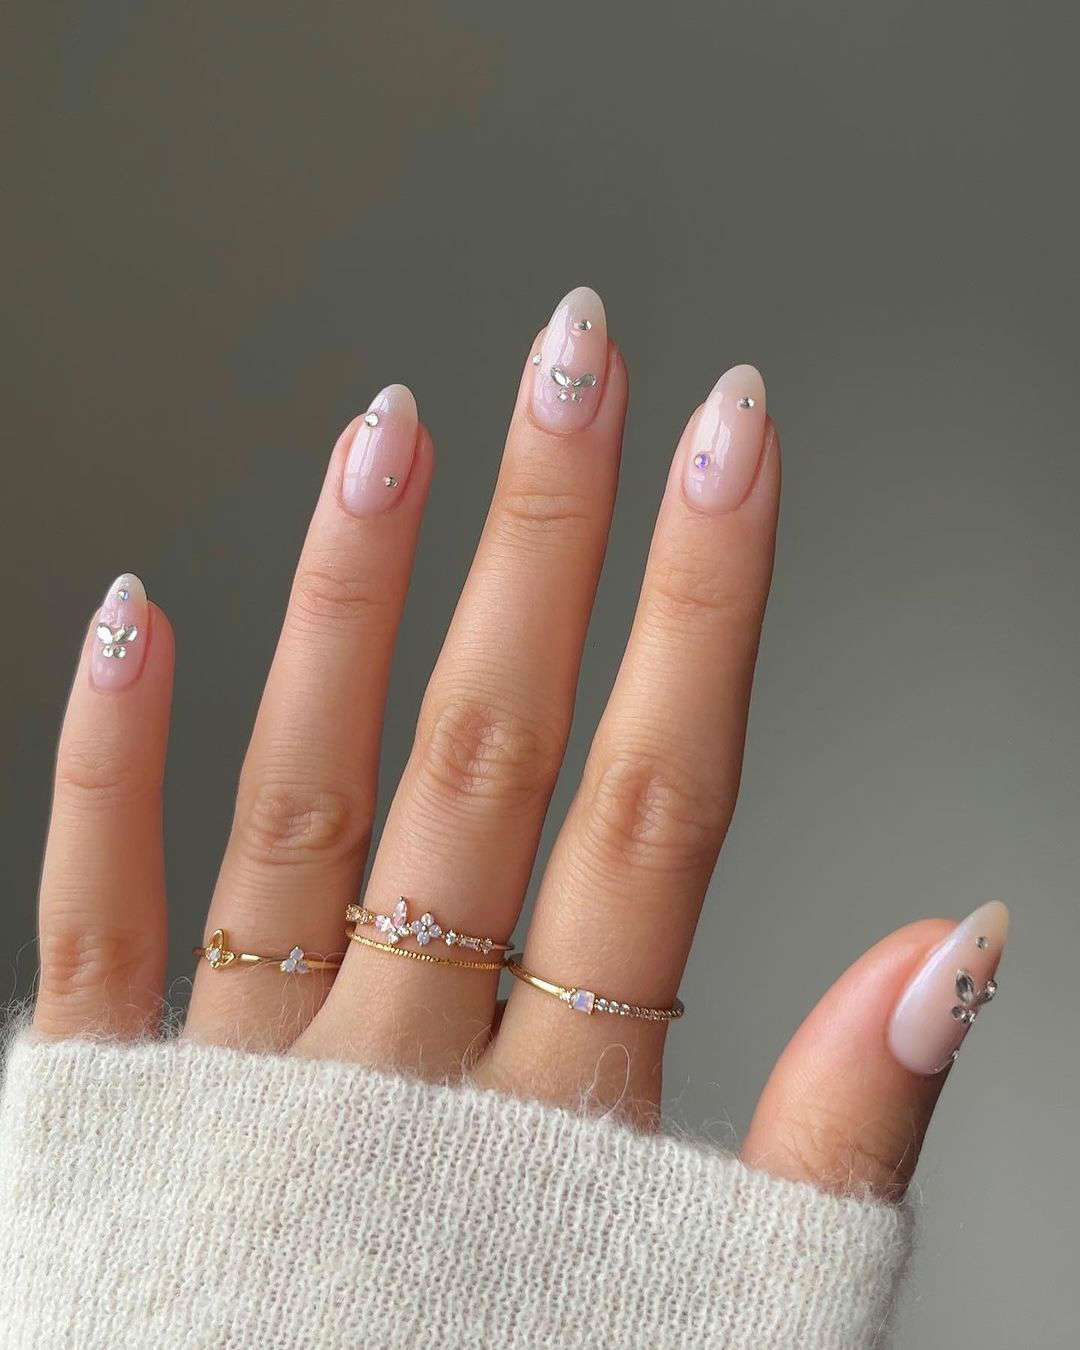 15 uñas permanentes bonitas para inspirarte: con pedrería